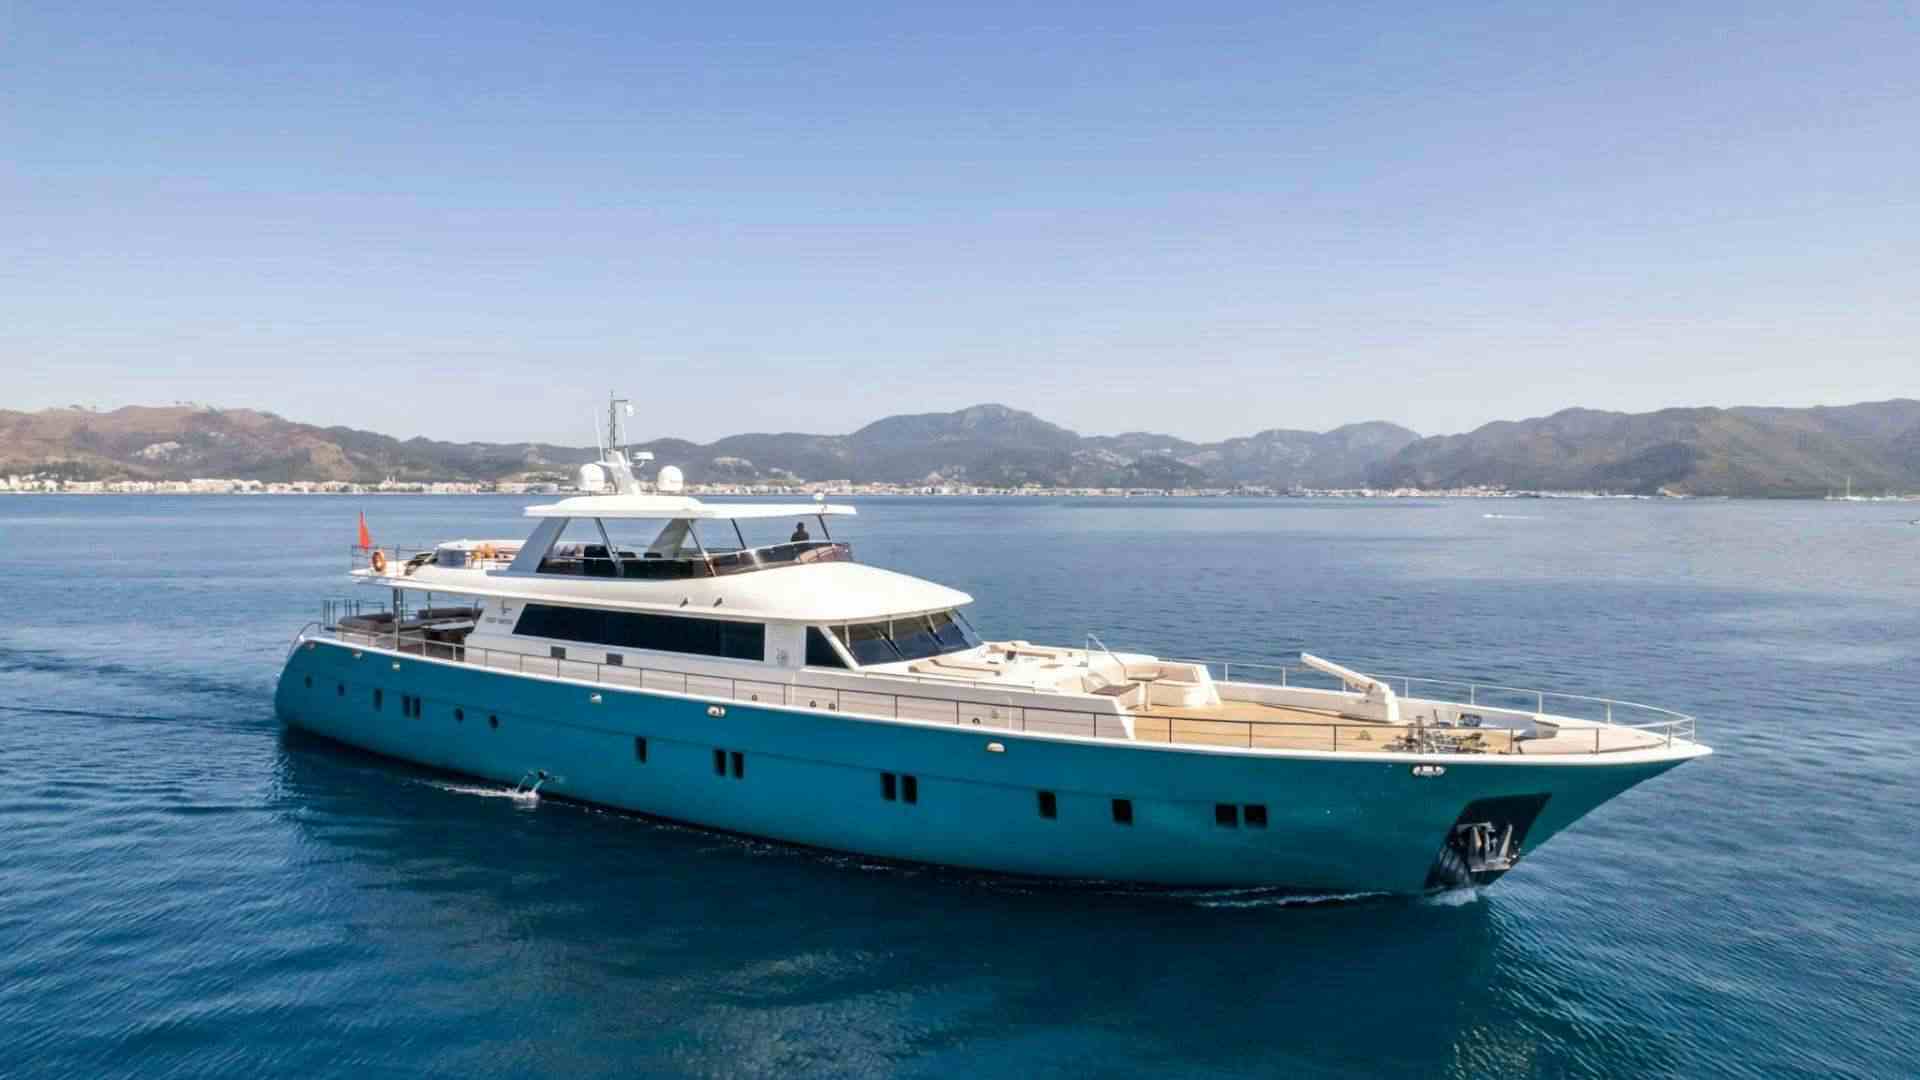 DEEP WATER - Yacht Charter Turkey & Boat hire in Turkey 1